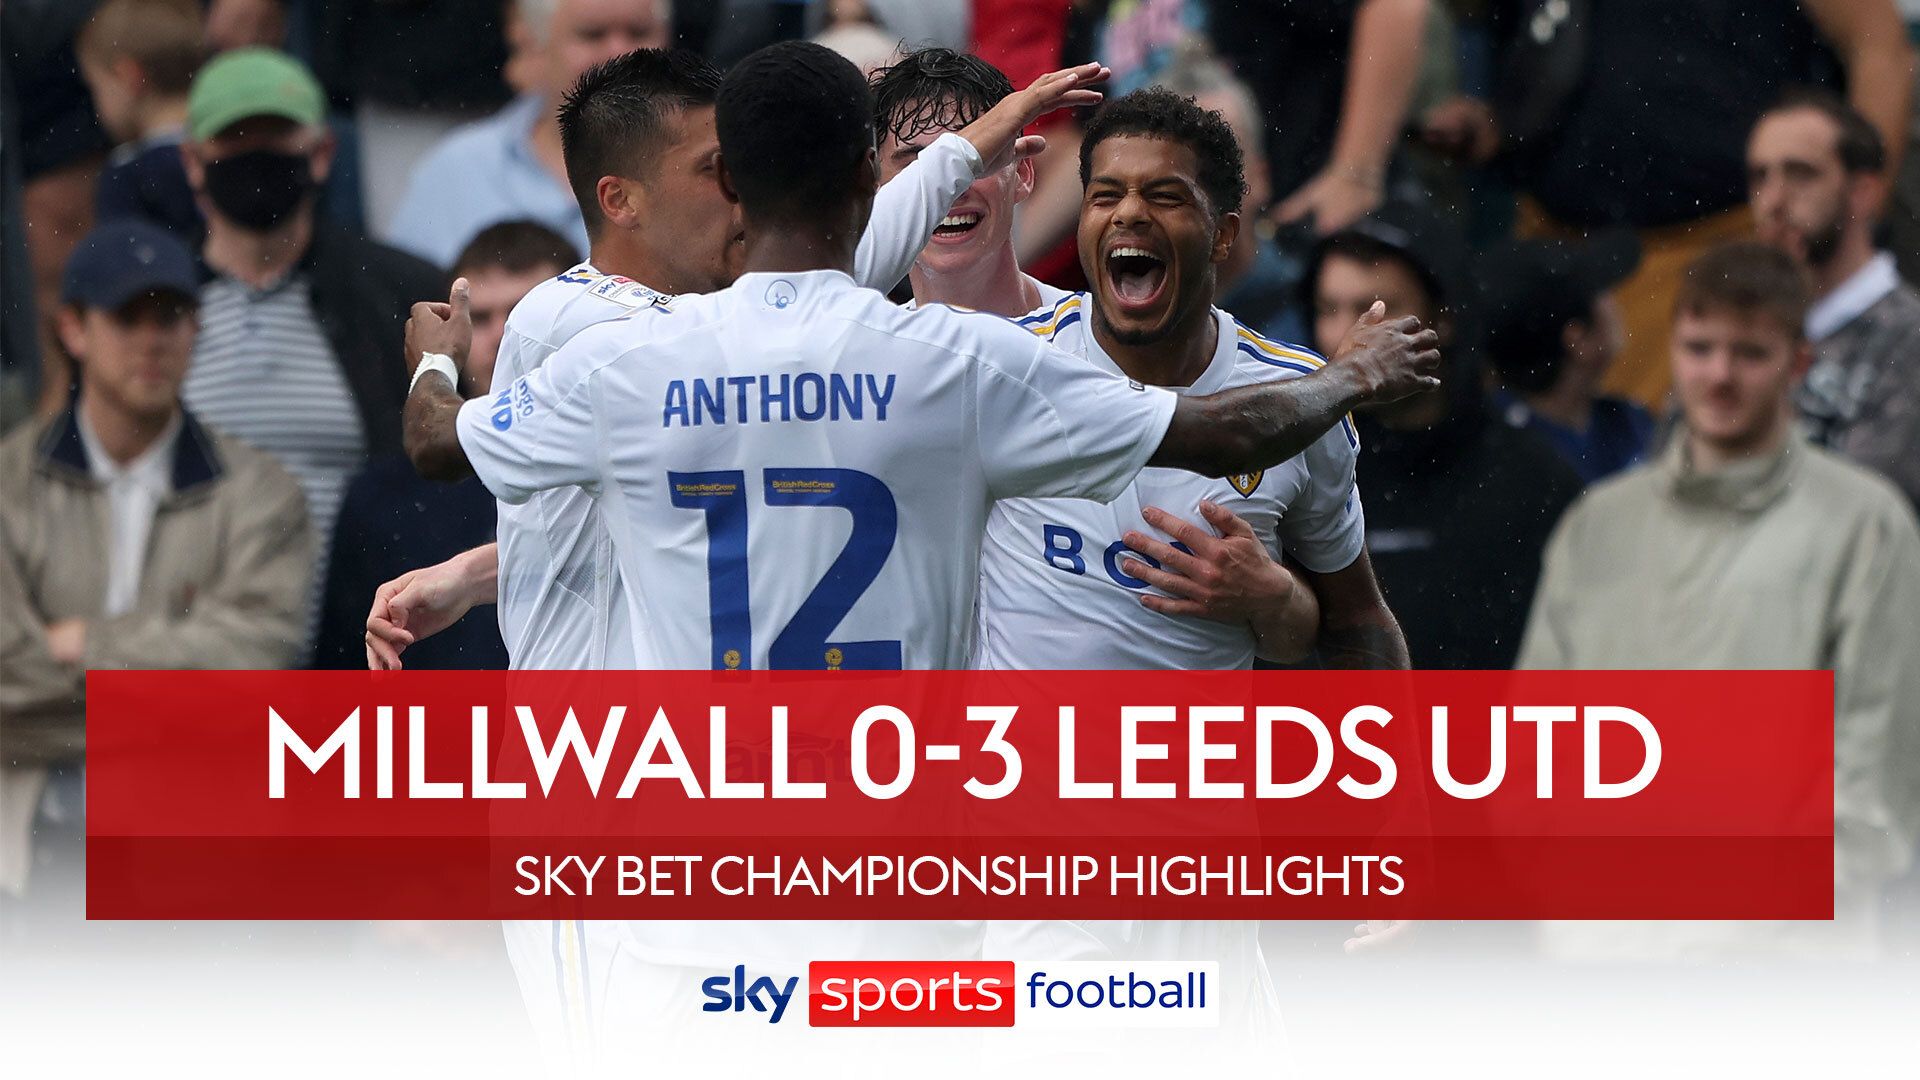 Millwall 0-3 Leeds